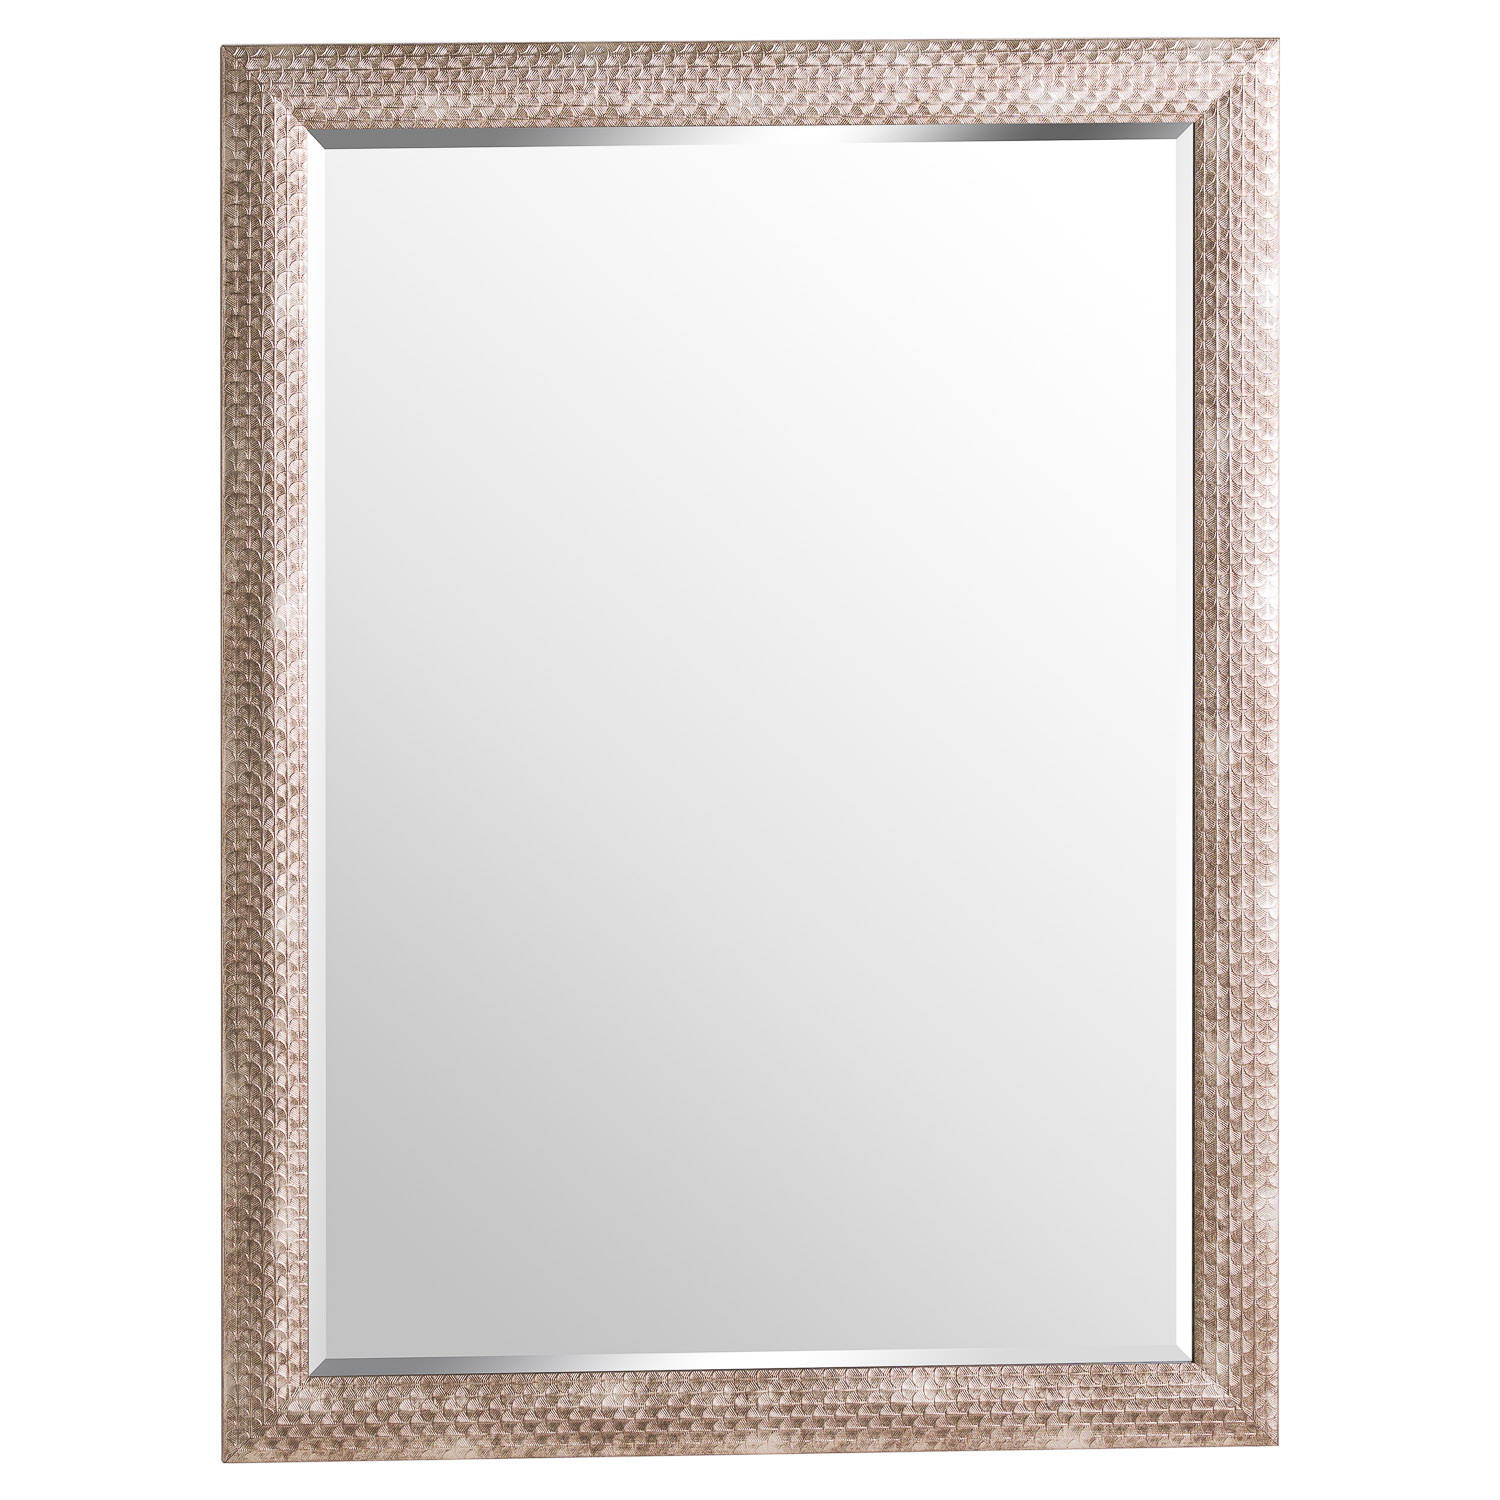 Oscar Large Framed Mirror - Image 1